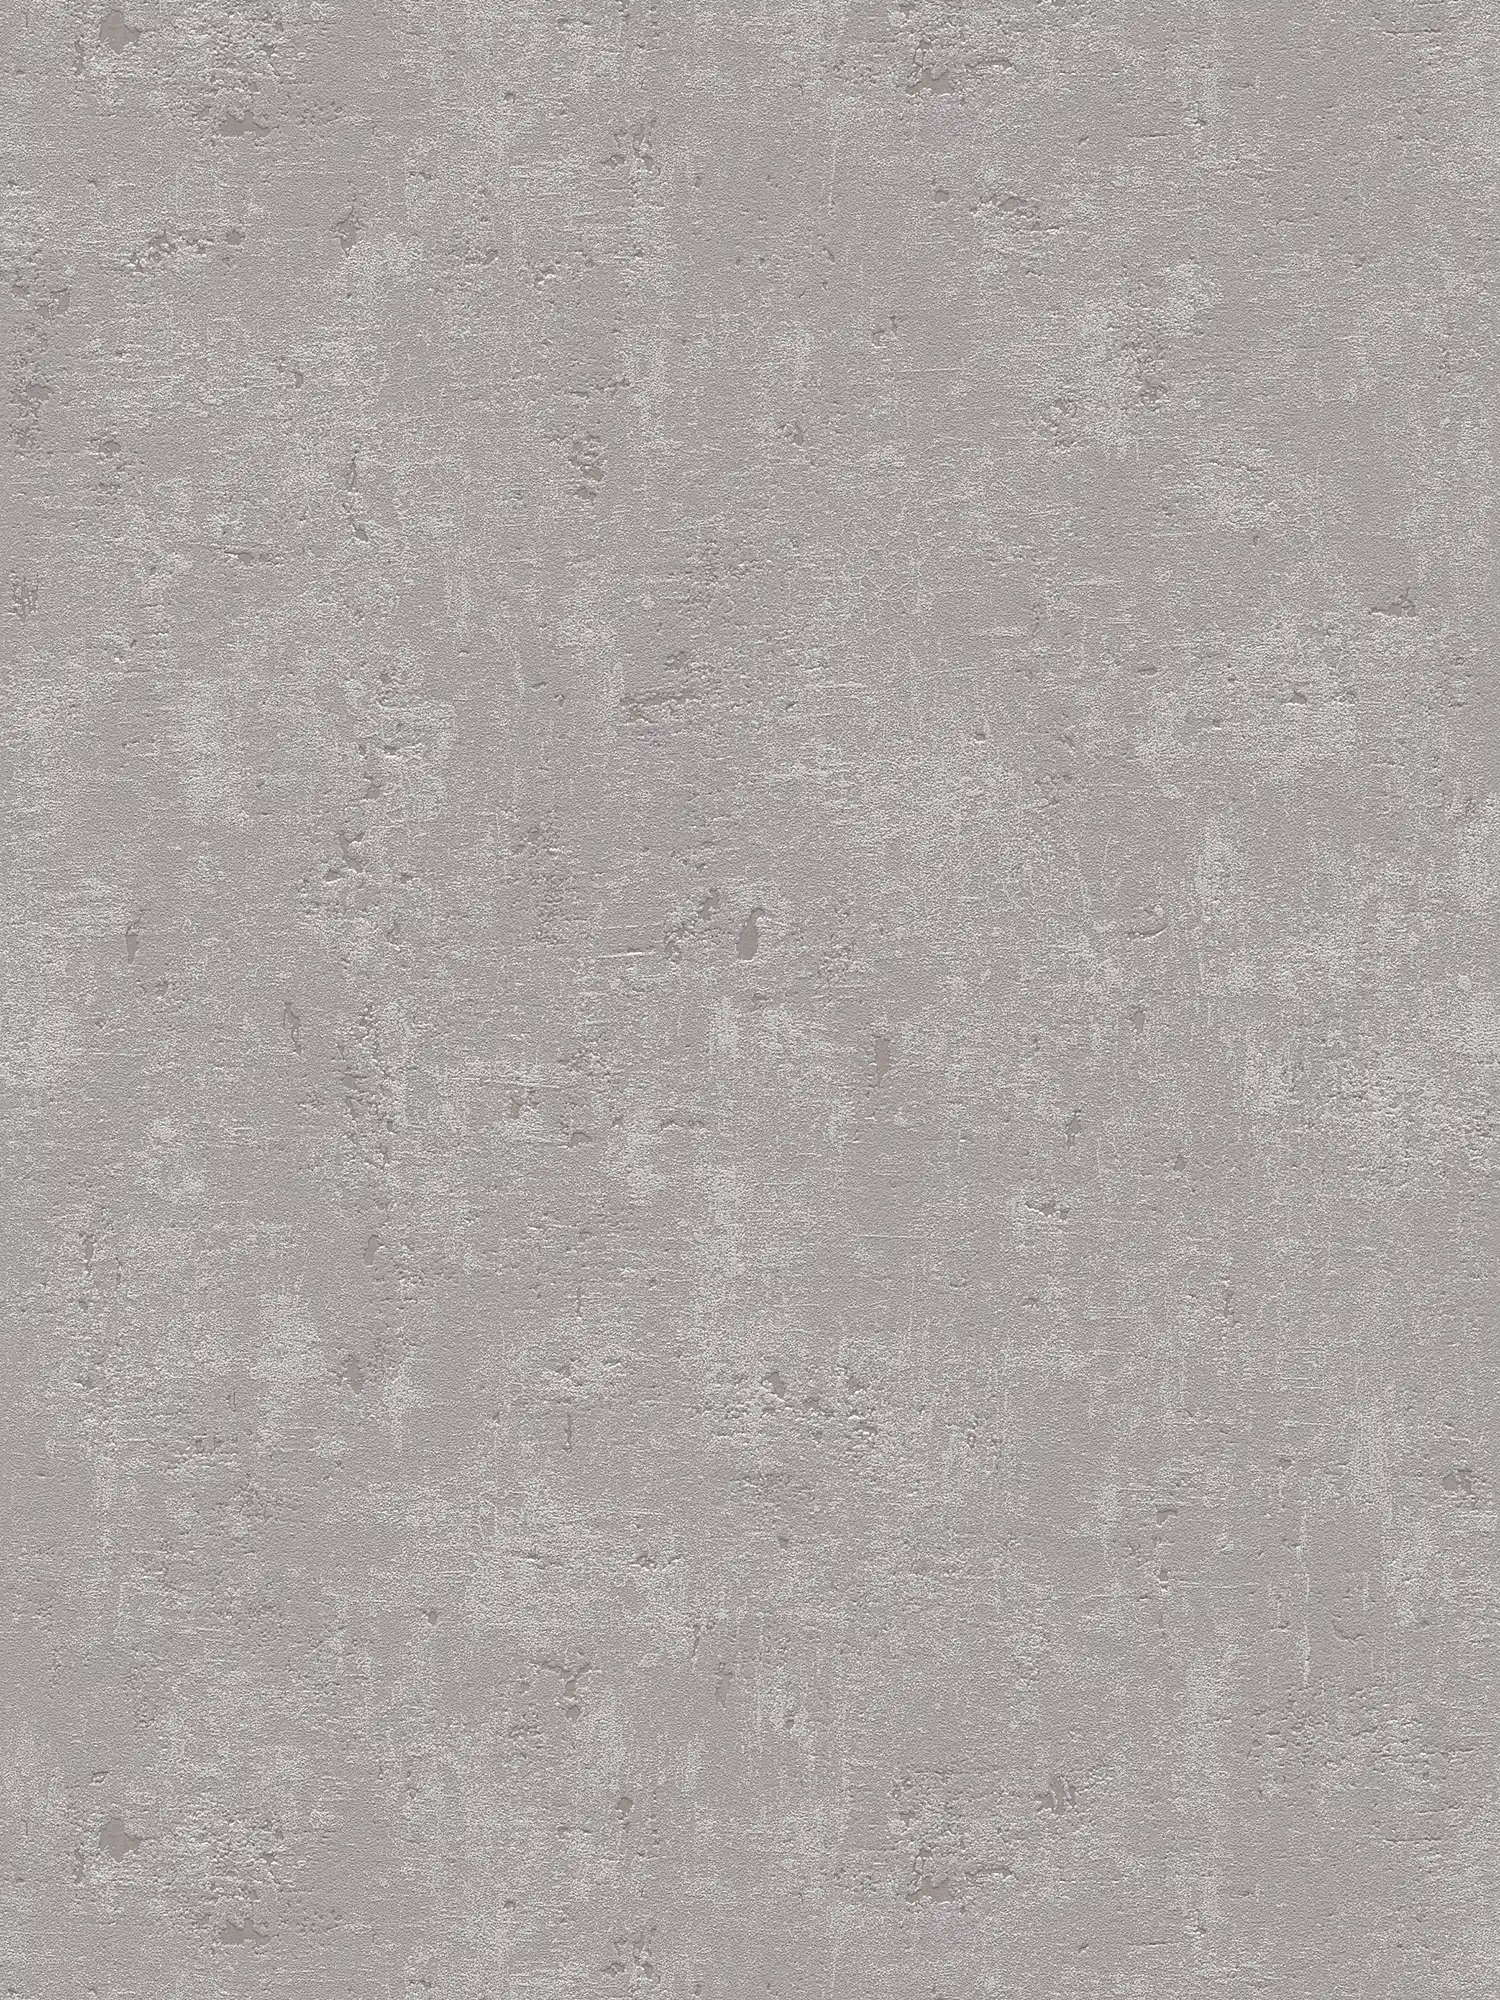 Carta da parati effetto cemento grigio rustico con texture superficiale
